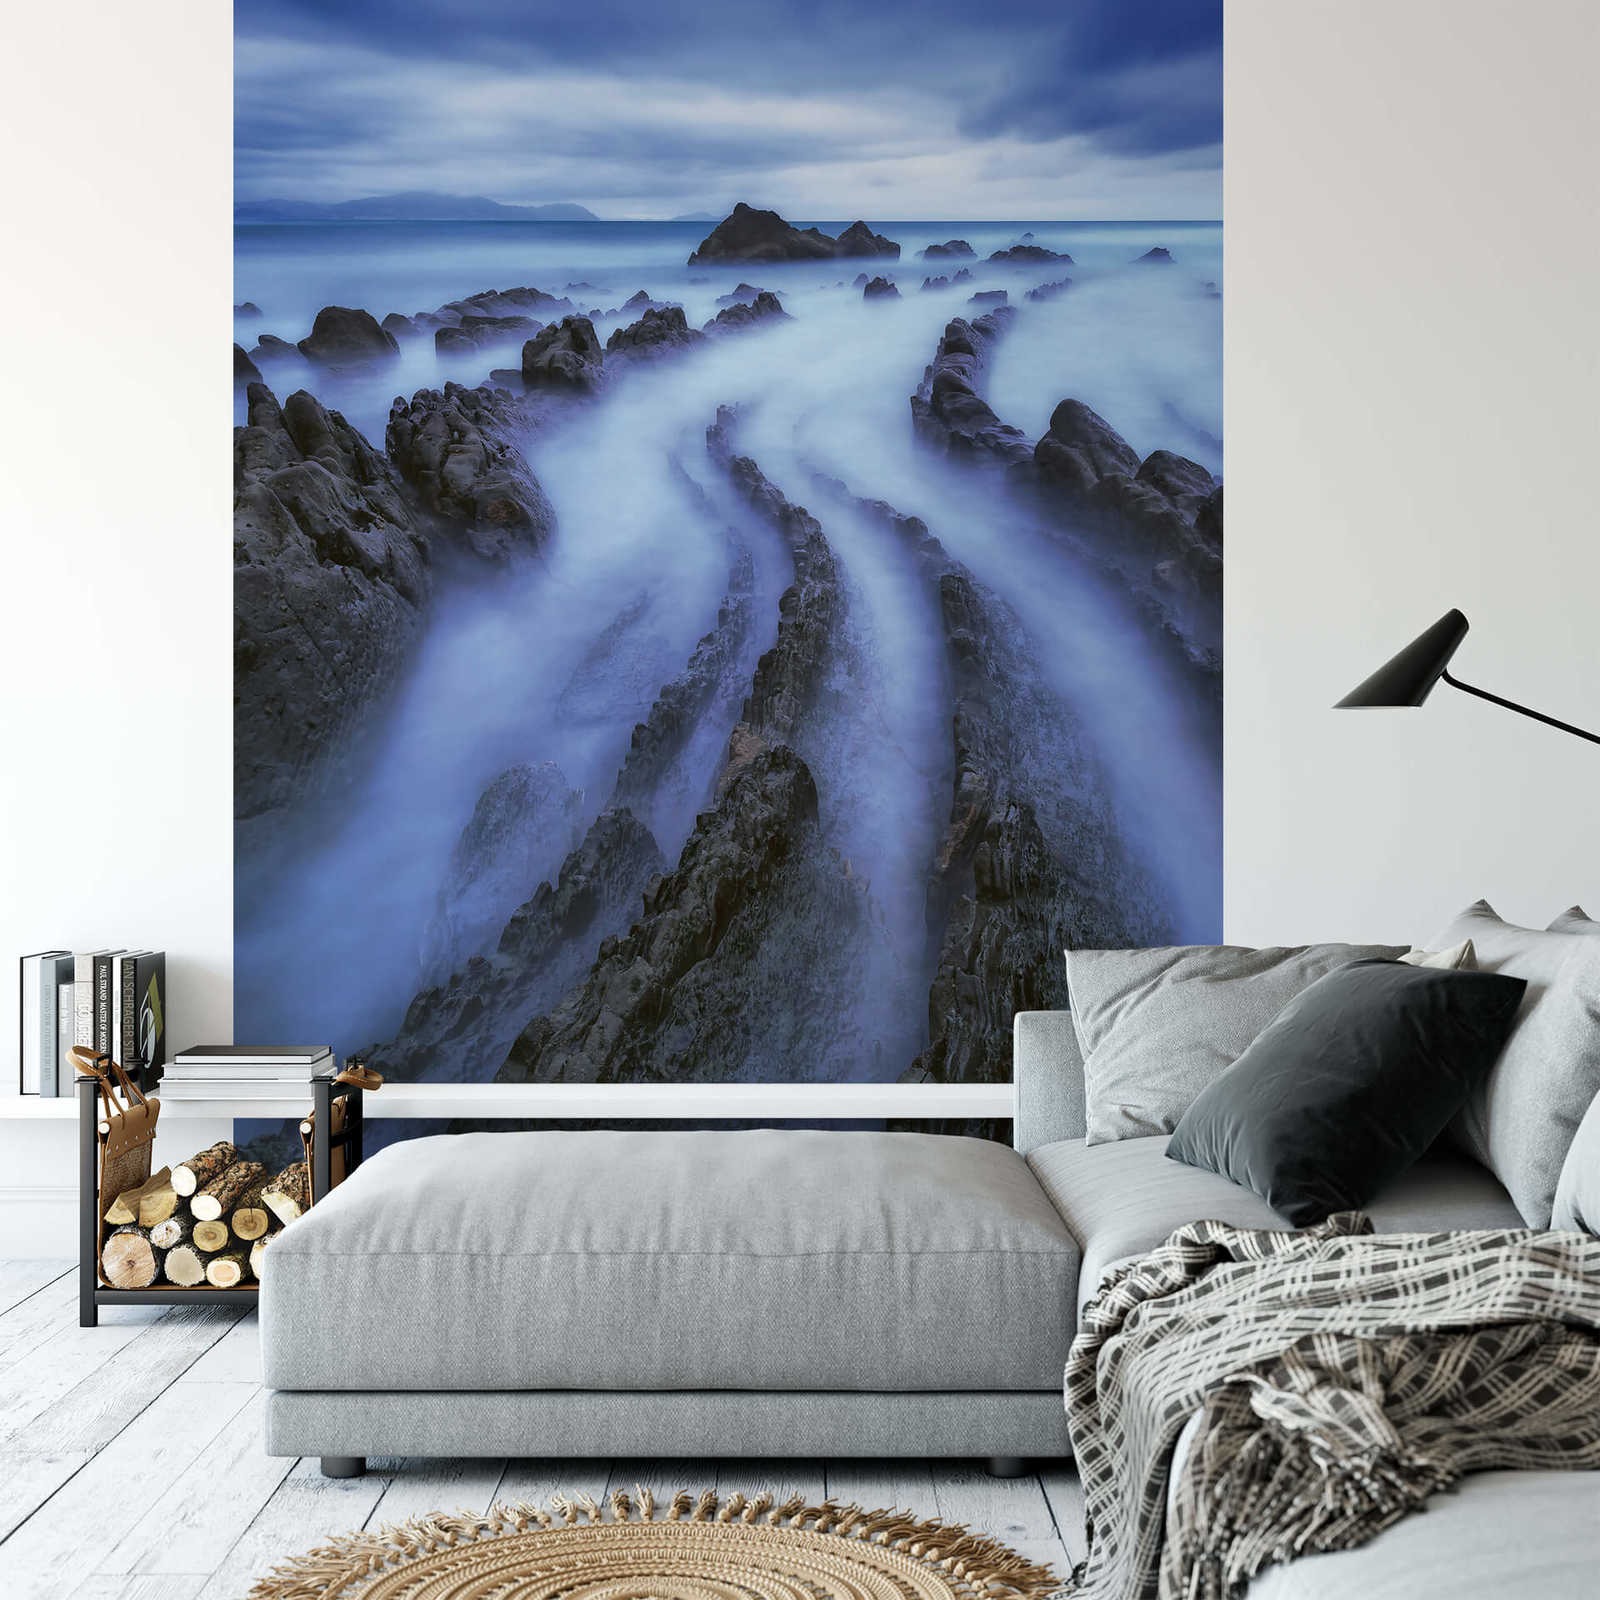             Papier peint panoramique paysage brume sur mer - bleu, gris
        